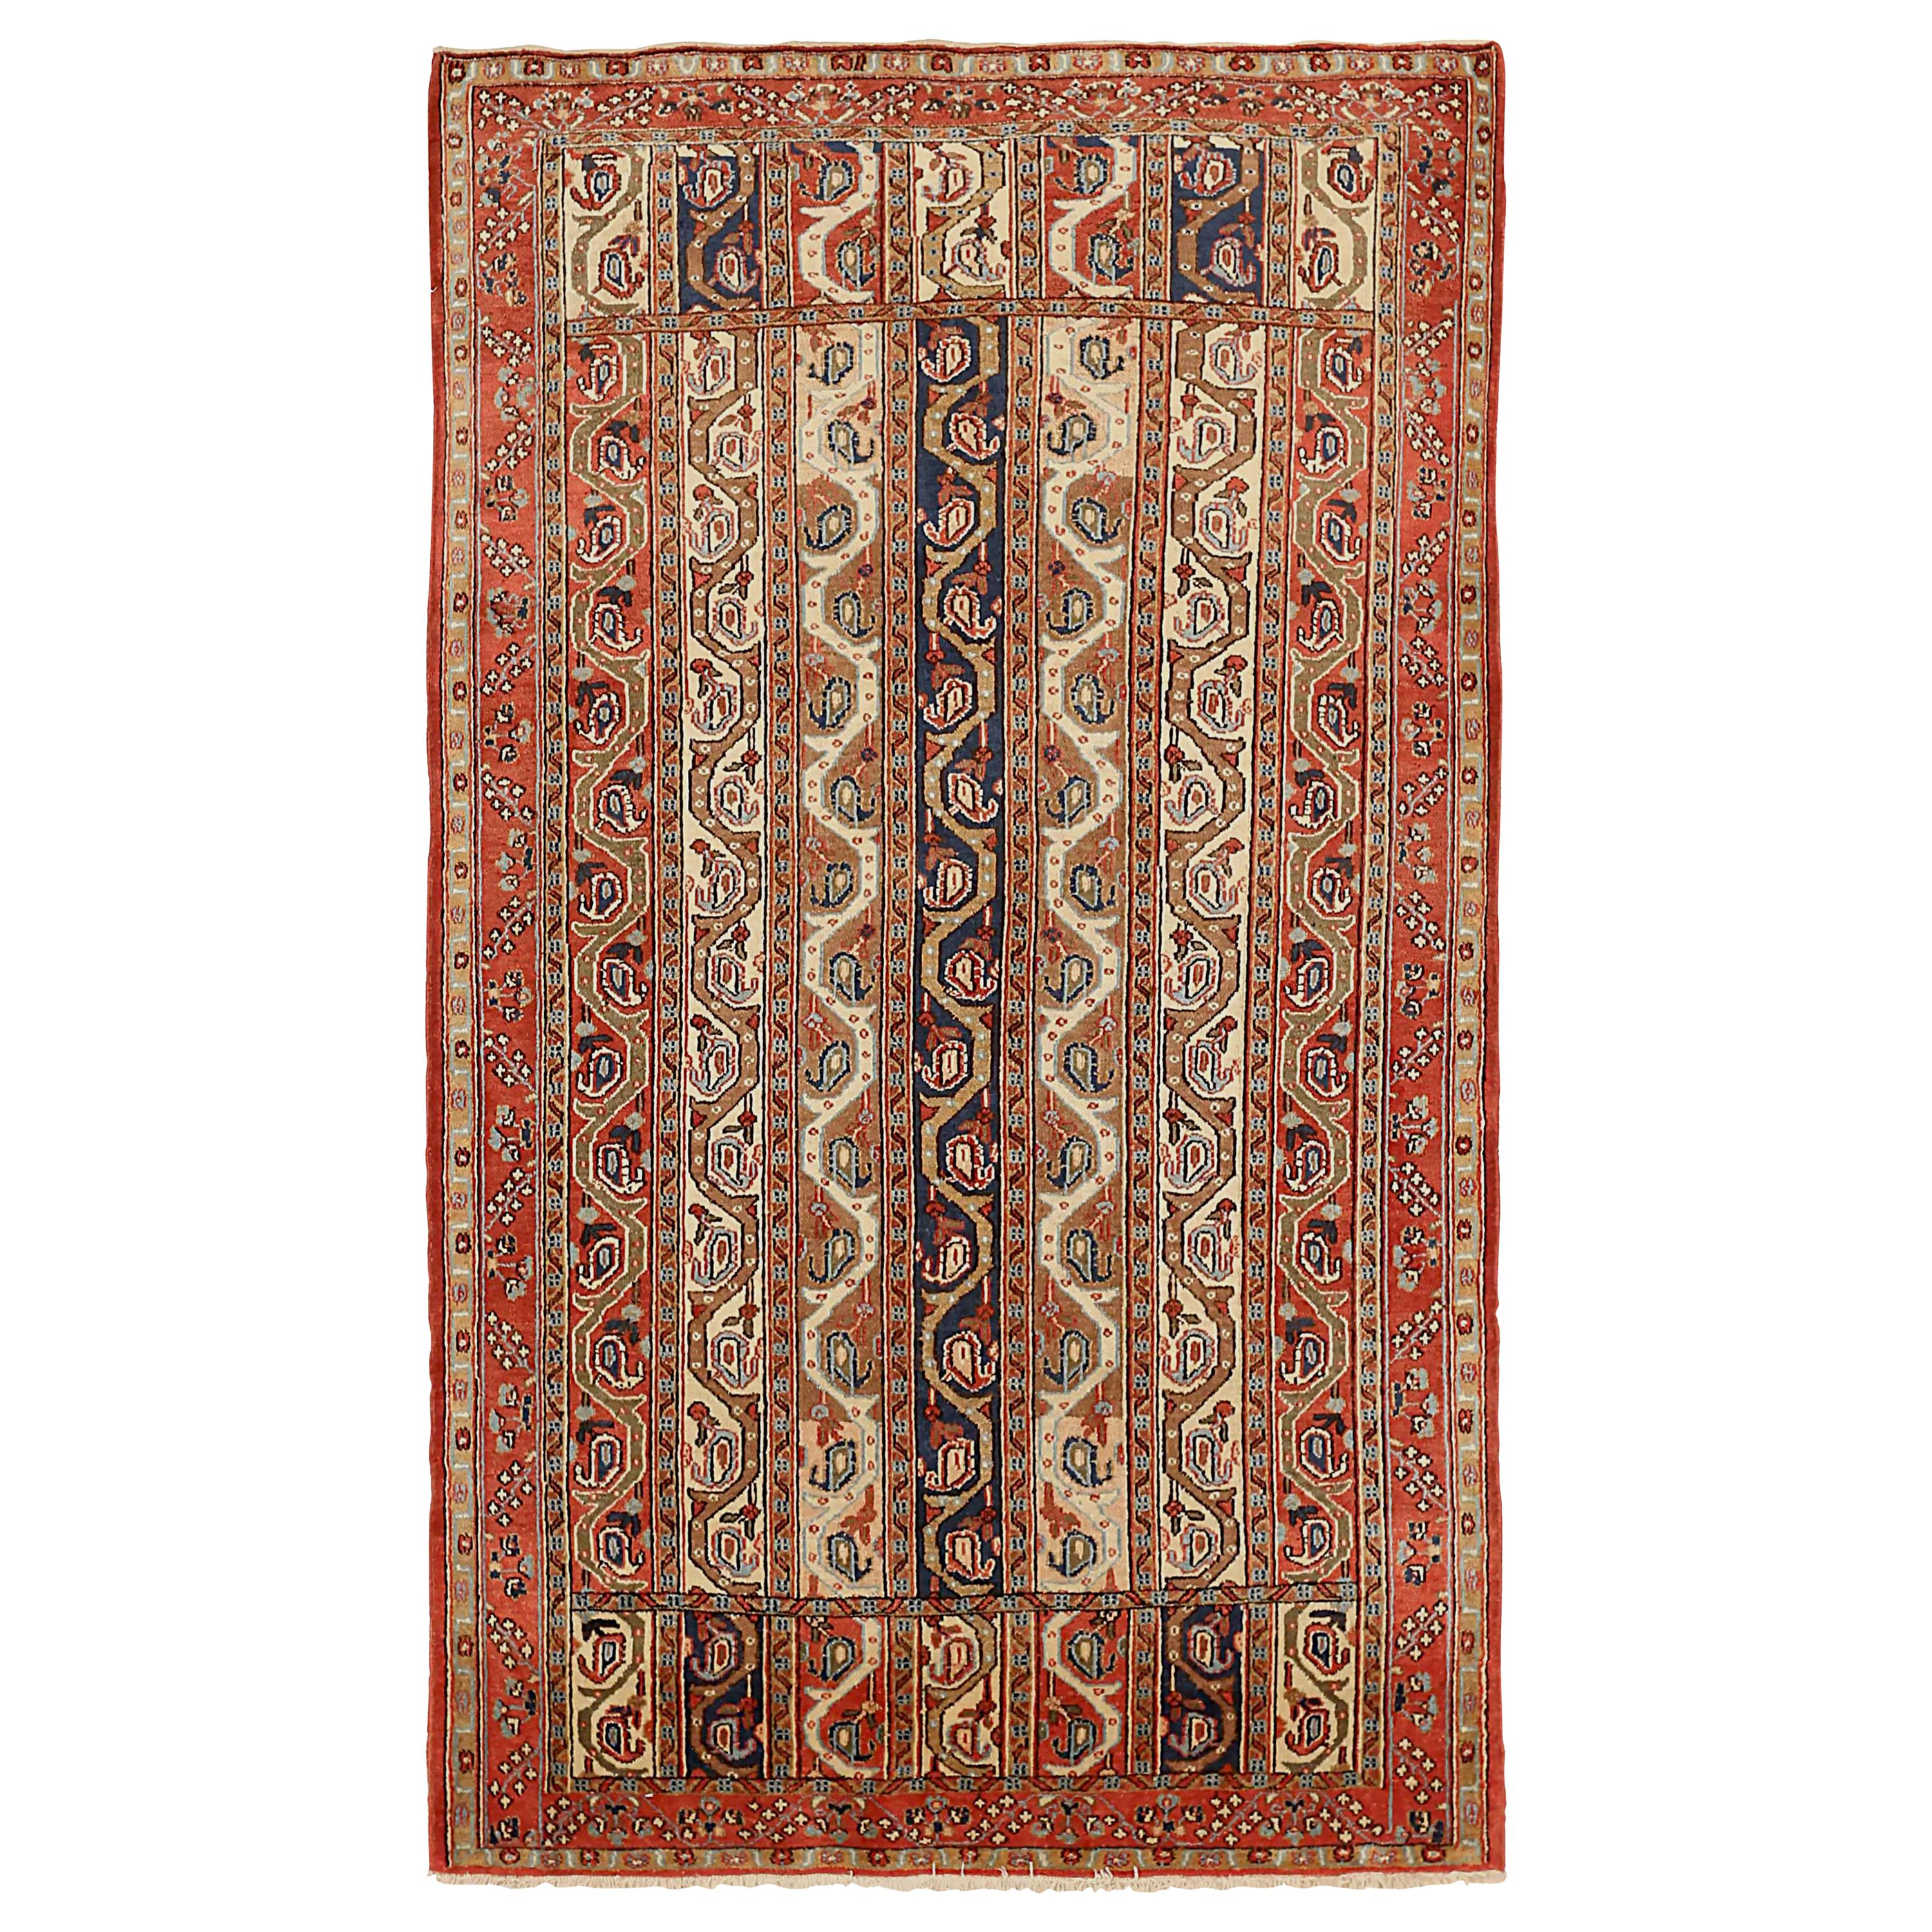 Antiker persischer Teppich im Qom-Design